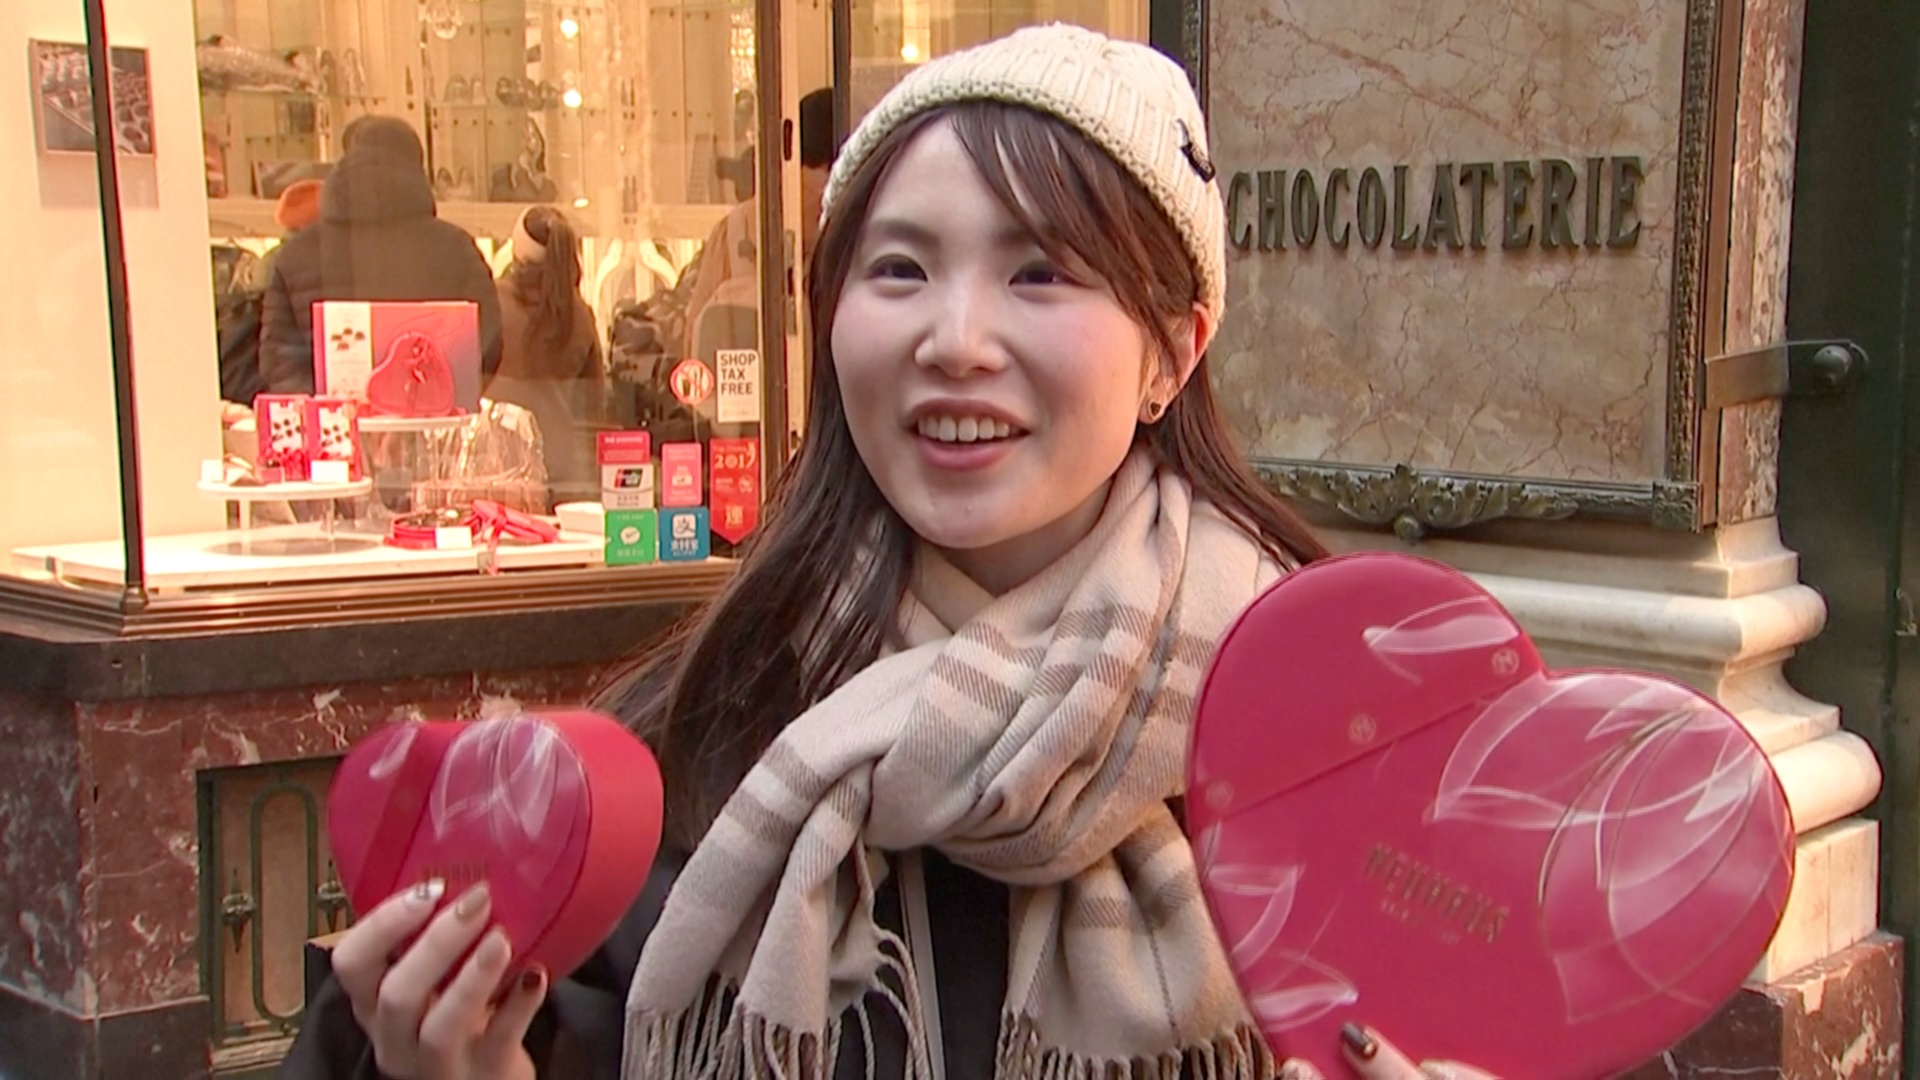 Конфеты в форме сердечек сметают с прилавков в Бельгии в День святого Валентина